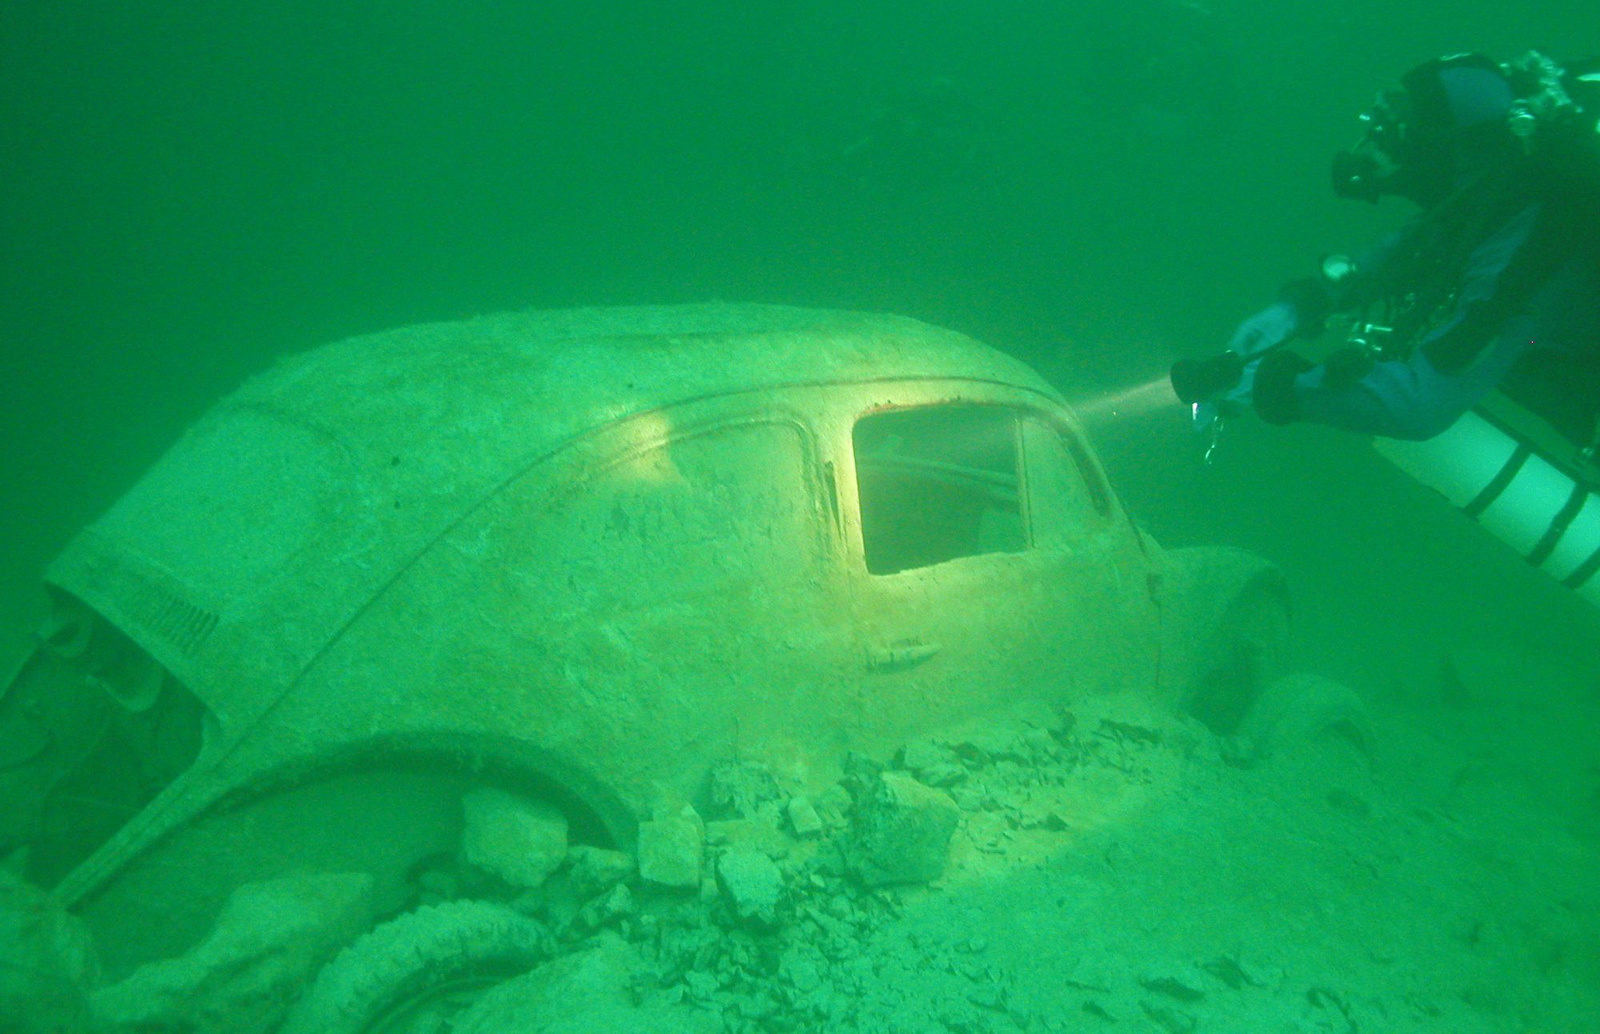 autók víz alatt (7)